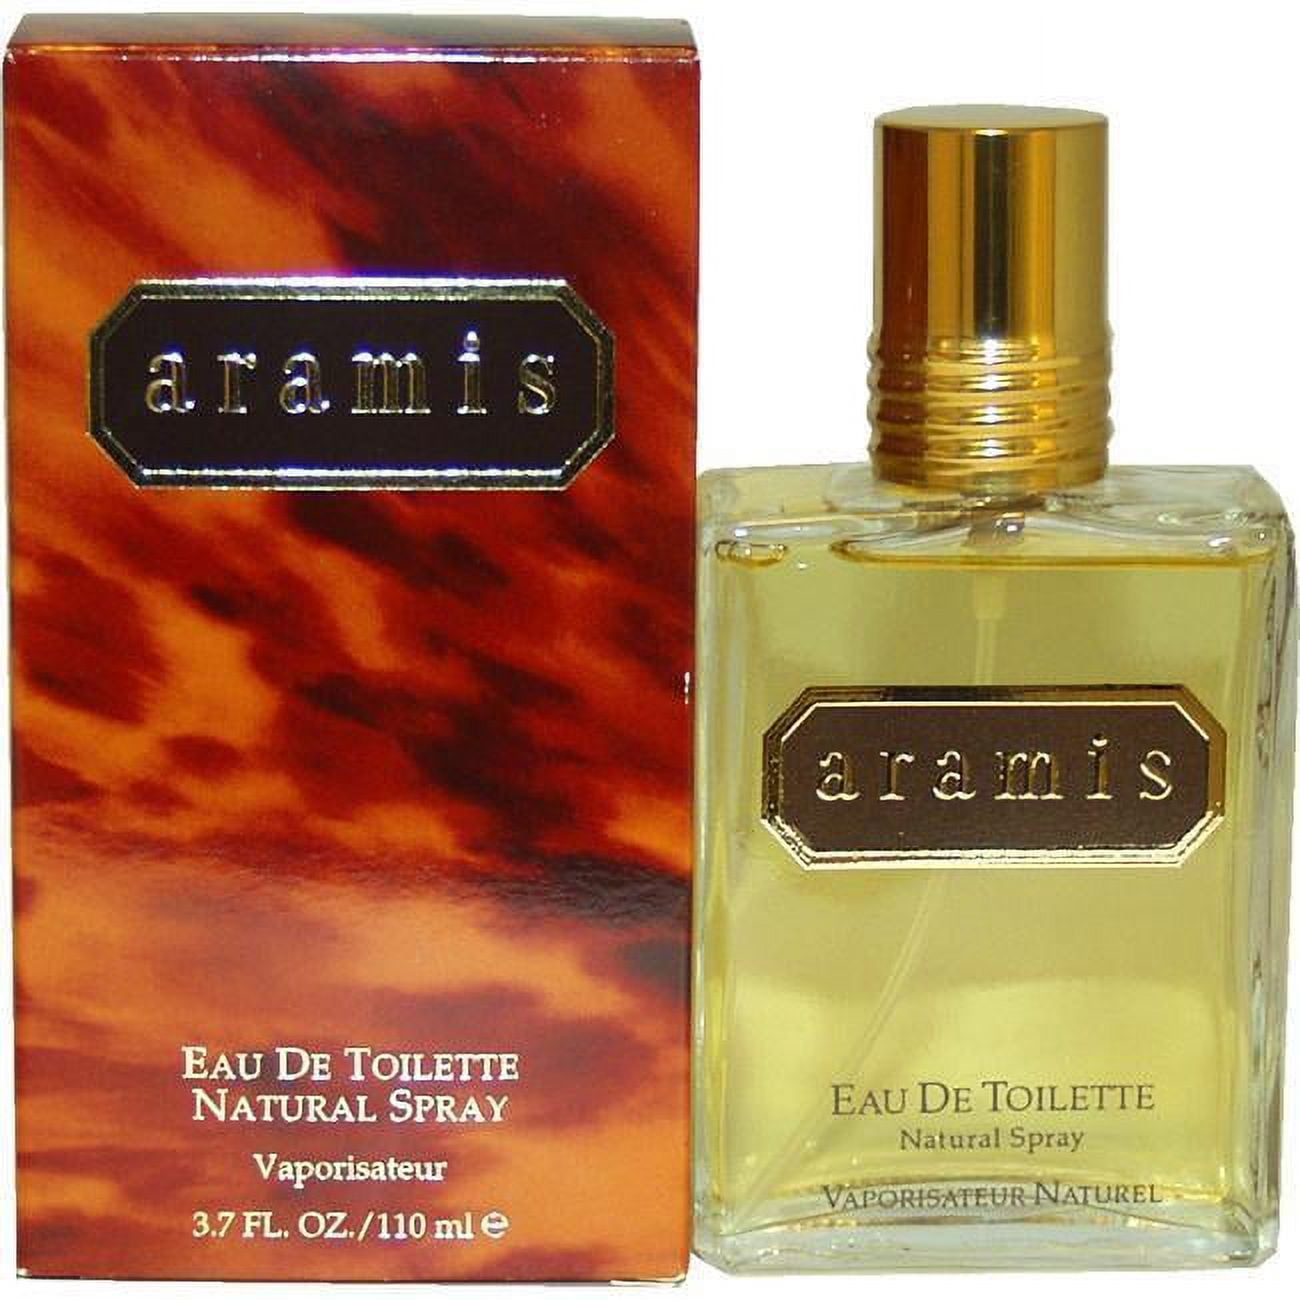 Lacoste: Essential 4.2 EDT 125ml, 86111, 737052483214, for, him, men, mens,  men's, man, mans, man's, fragrance, fragrances, aftershave, aftershaves